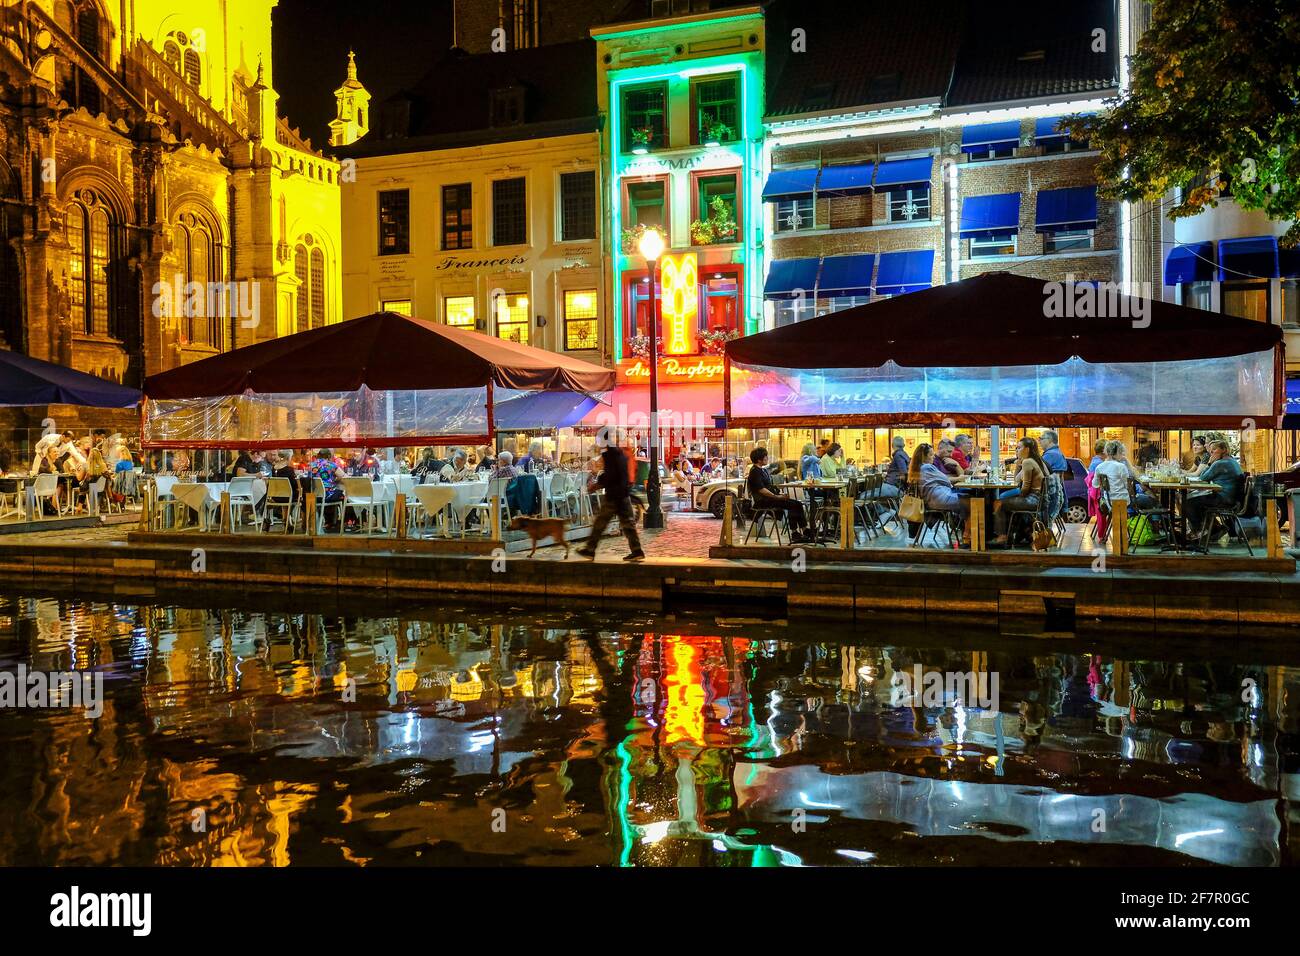 21.09.2019, Bruessel, Belgien - gut besuchte Restaurantterrassen am Abend am Quai aux Briques im Bereich des ehemaligen Innenstadthafens neben der Kir Stock Photo